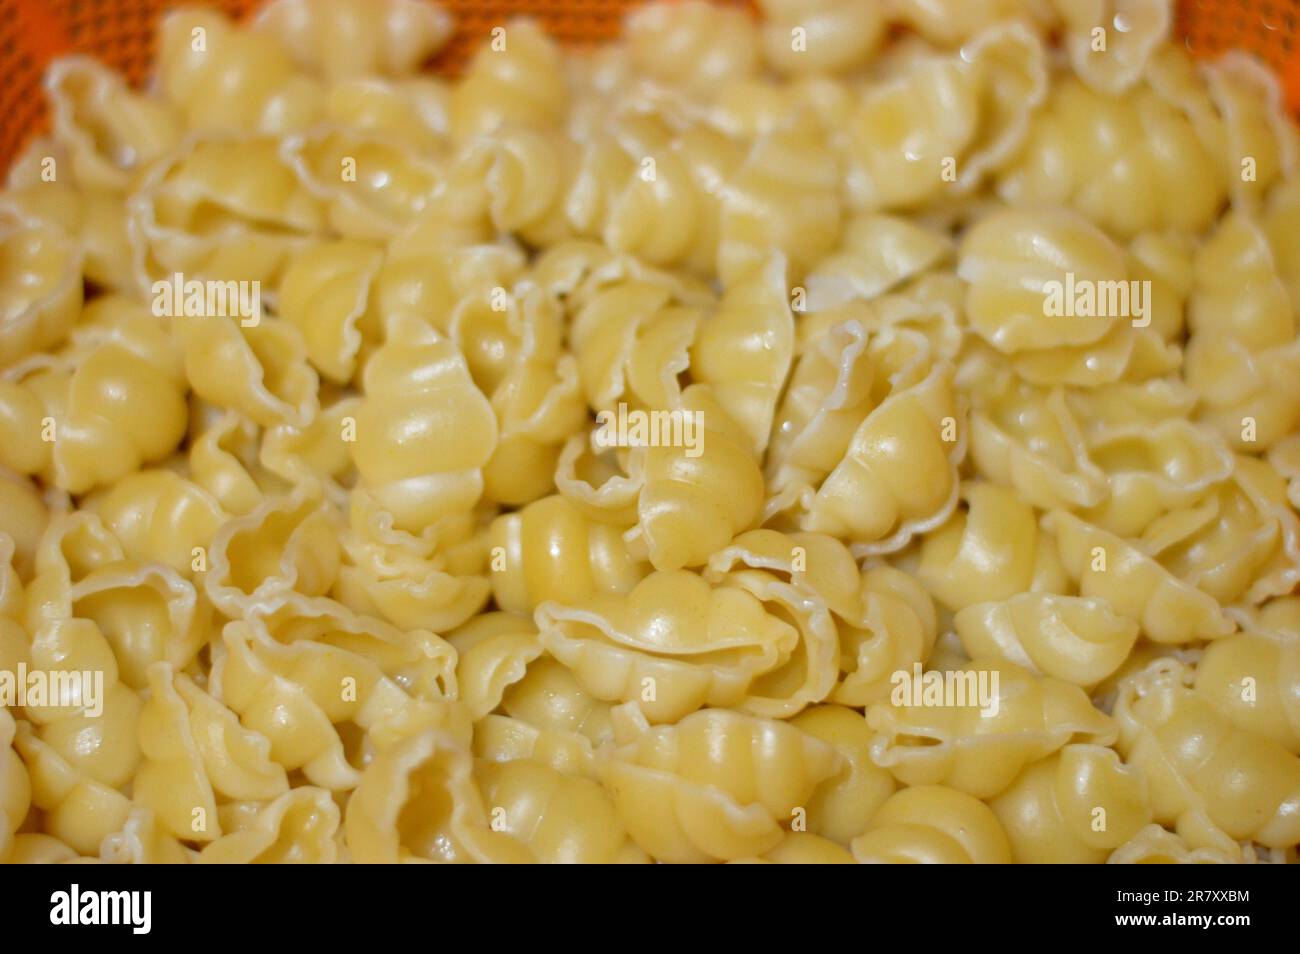 Macaroni bolliti, pasta bollita a forma di lumache, a base di grano duro, focus selettivo di pasta pronta per essere cotta in ricette italiane o altre ricette Foto Stock